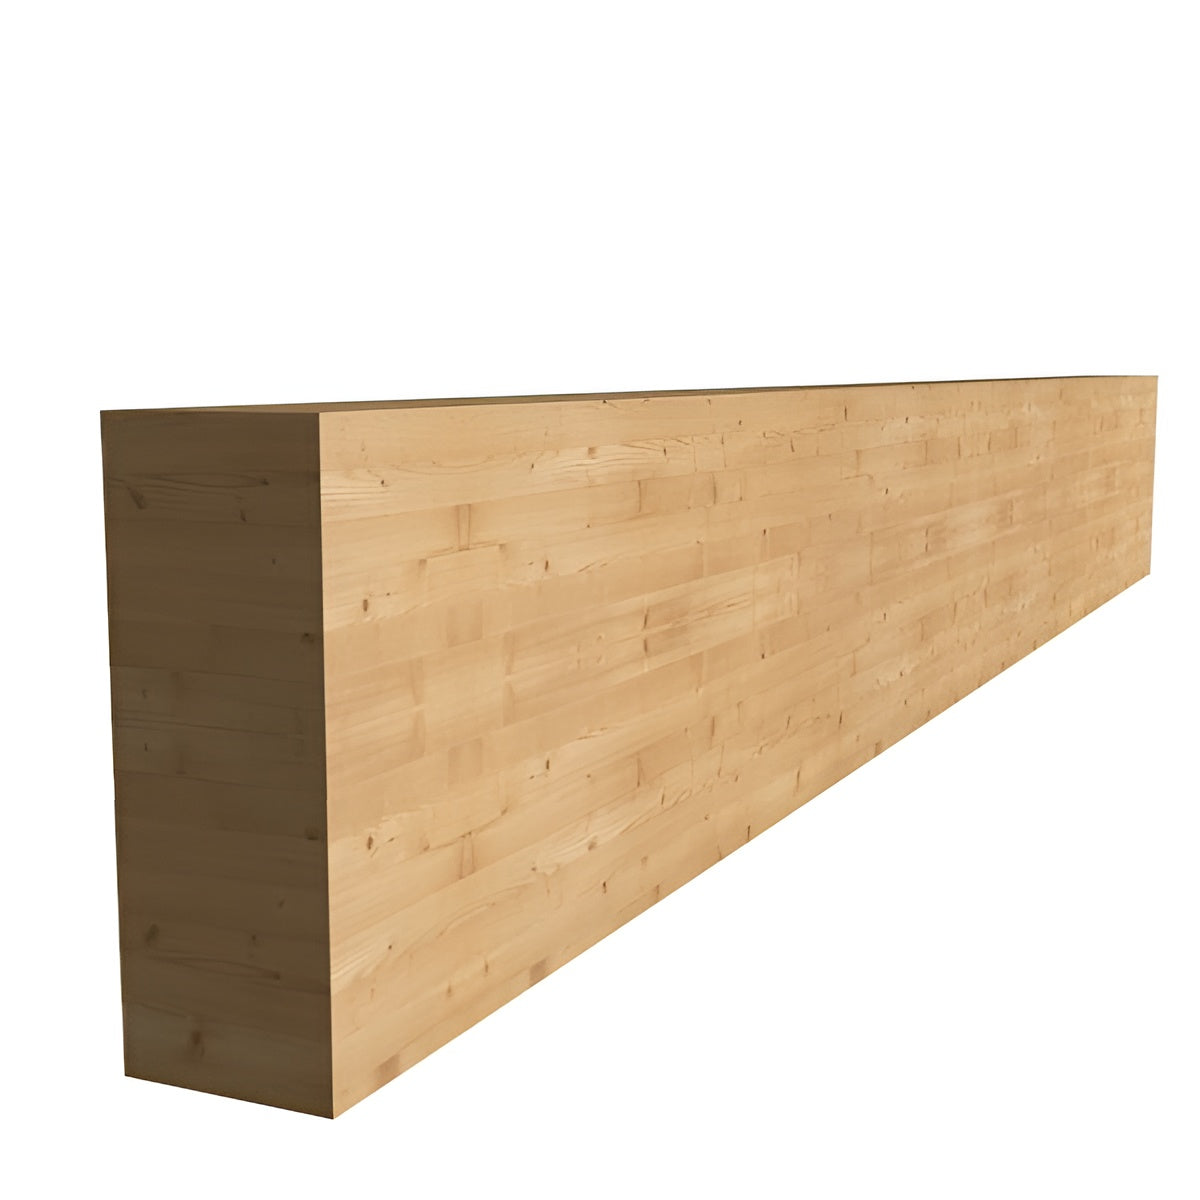 120 x 260 x 13500 mm Σύνθετη ξυλεία GL24